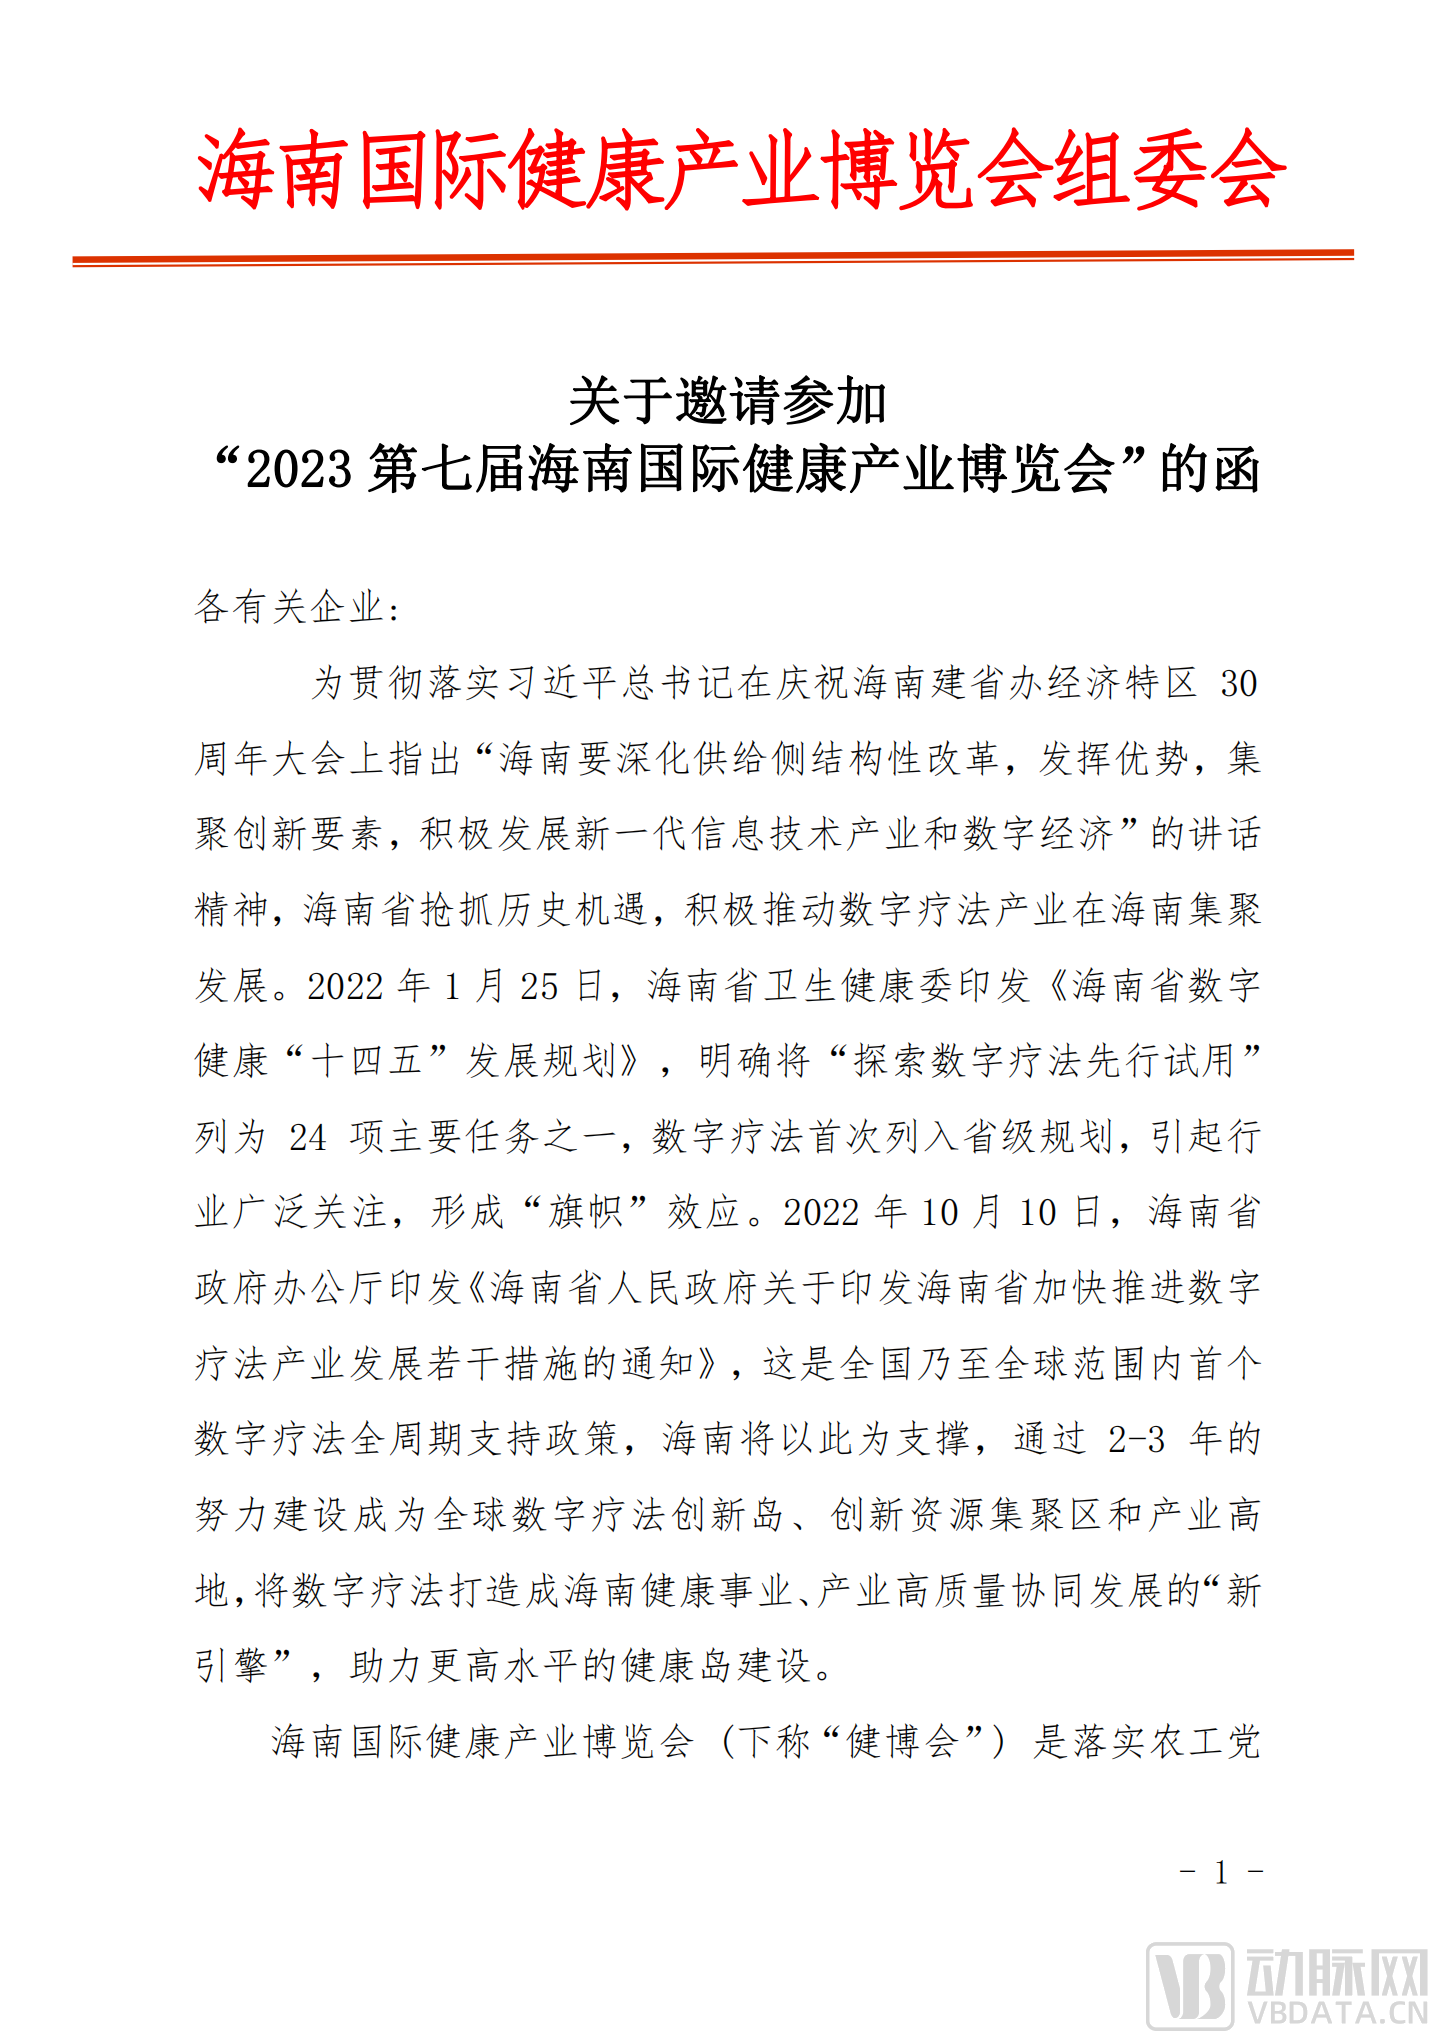 关于参加“2023中国数字疗法发展高峰论坛暨数字疗法专题展”的邀请函_00.png